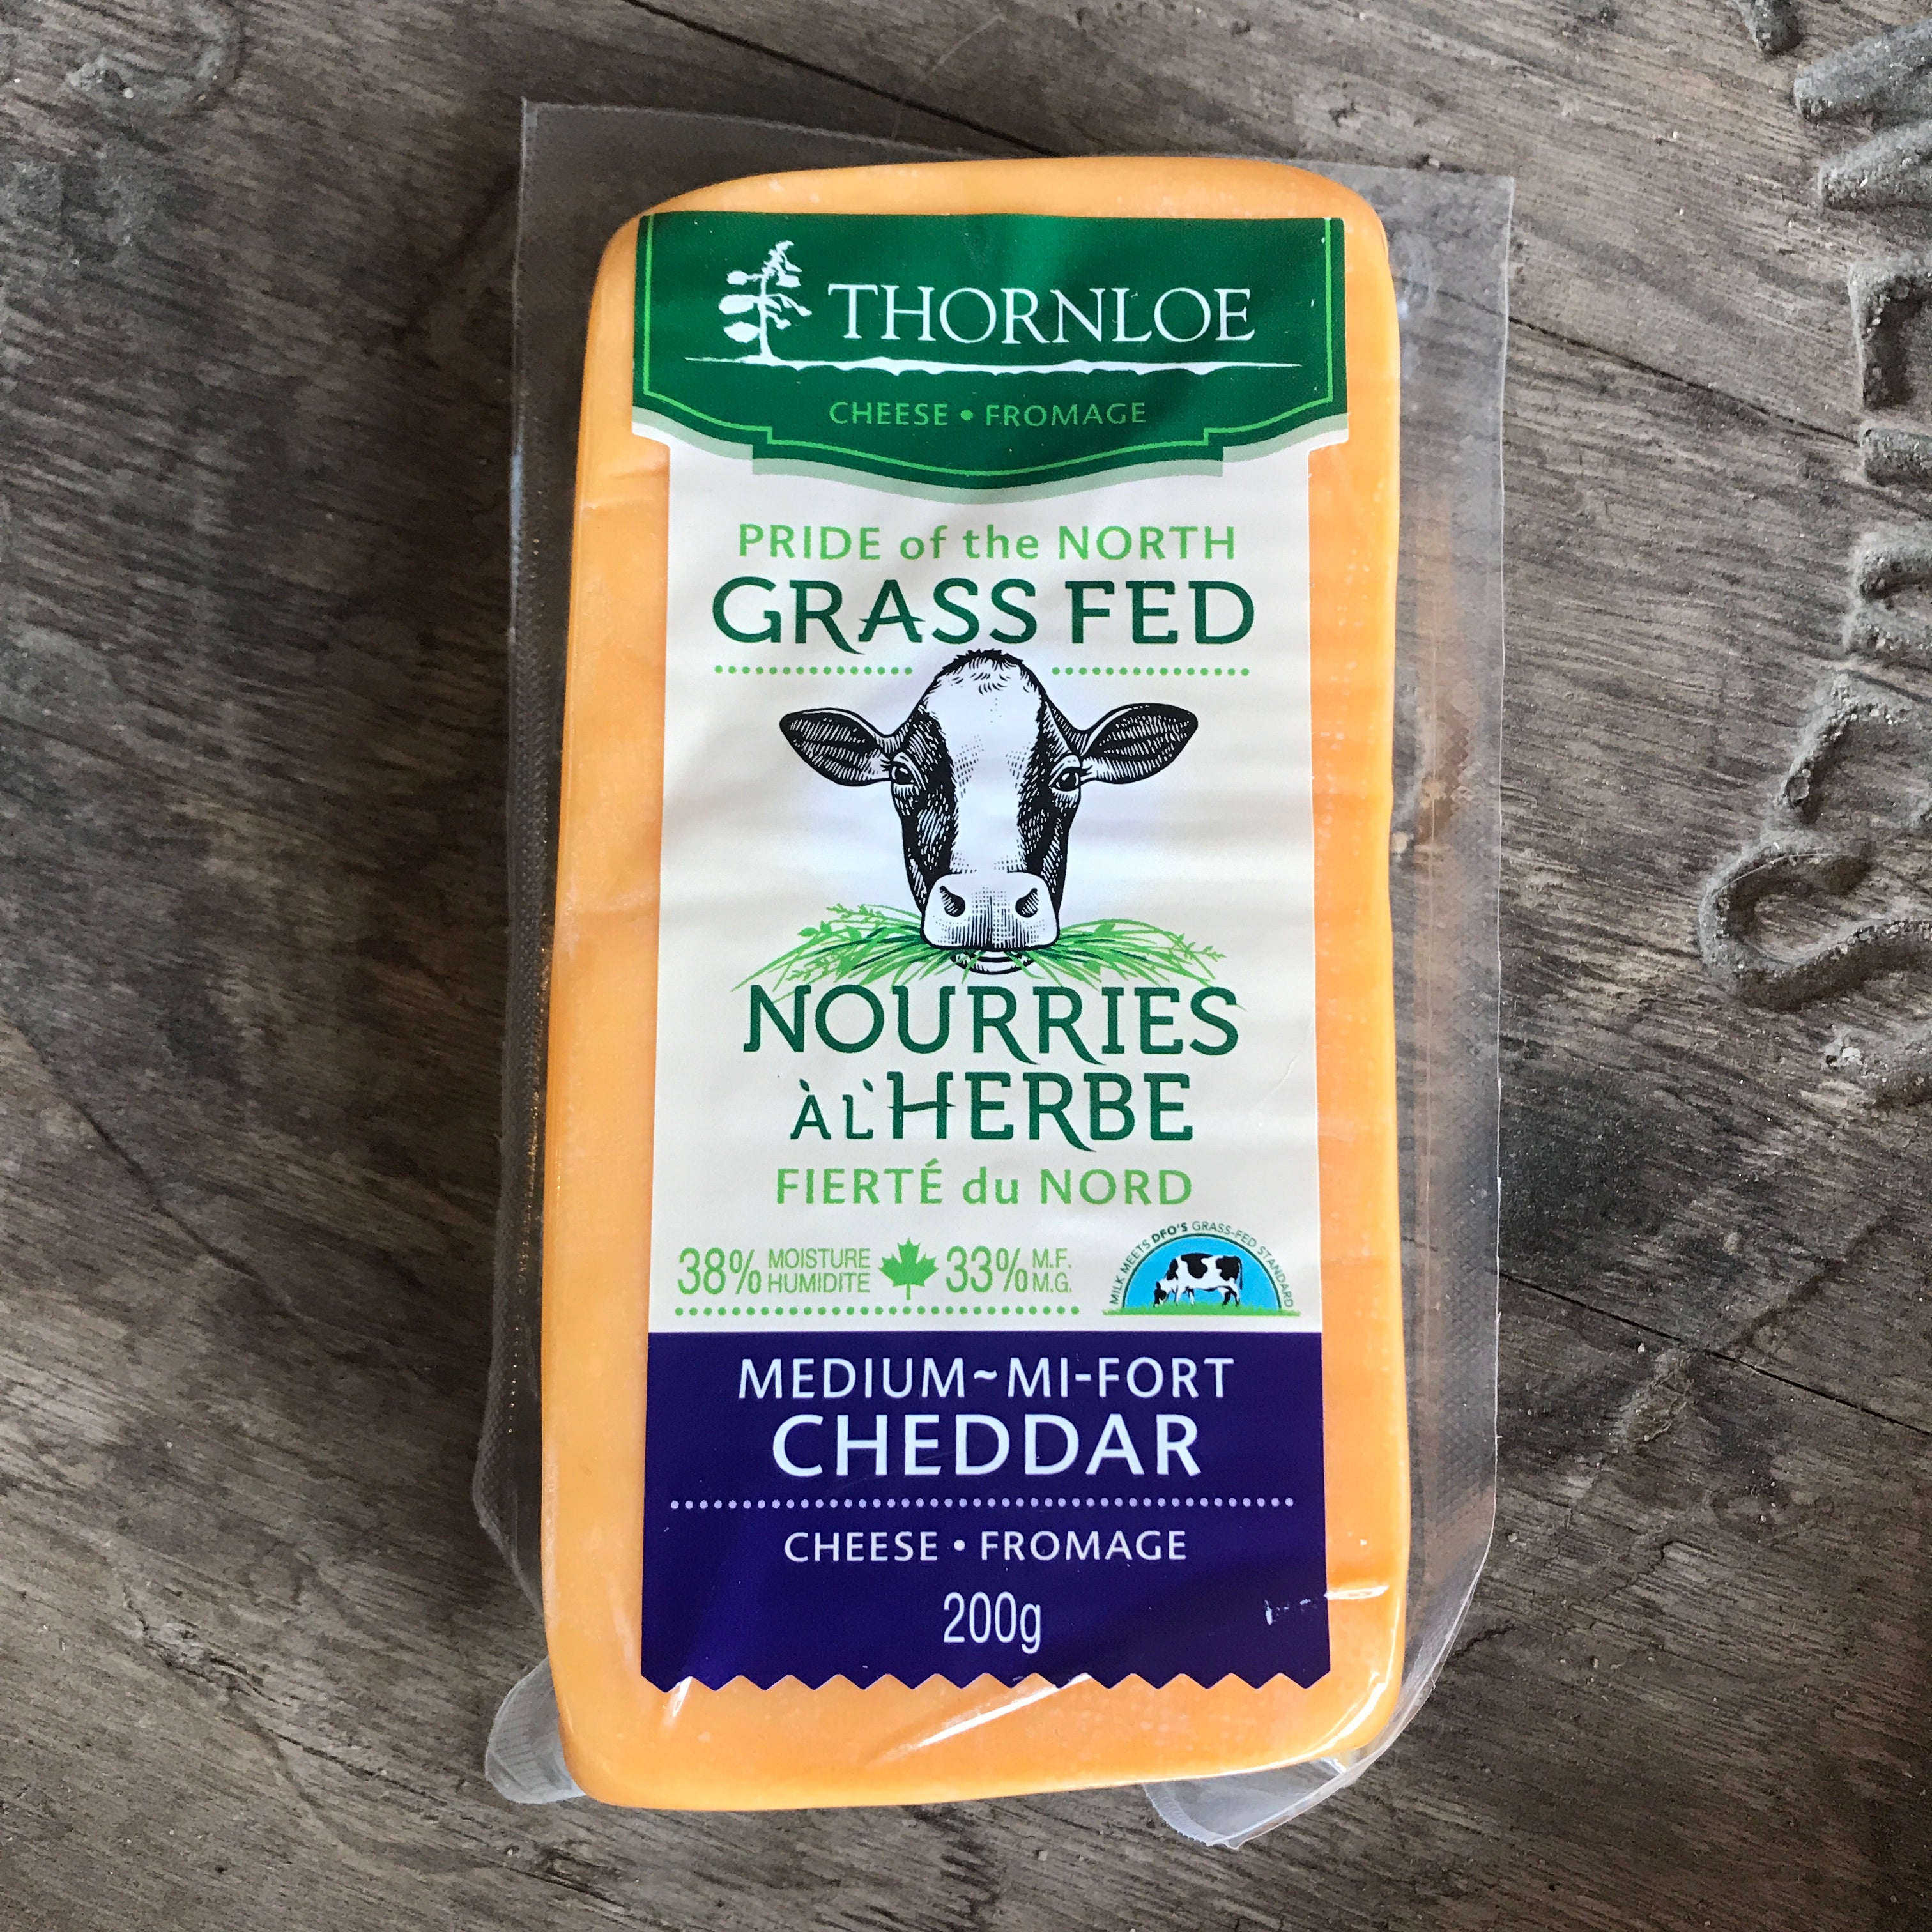 Thornloe Cheese - Medium Cheddar